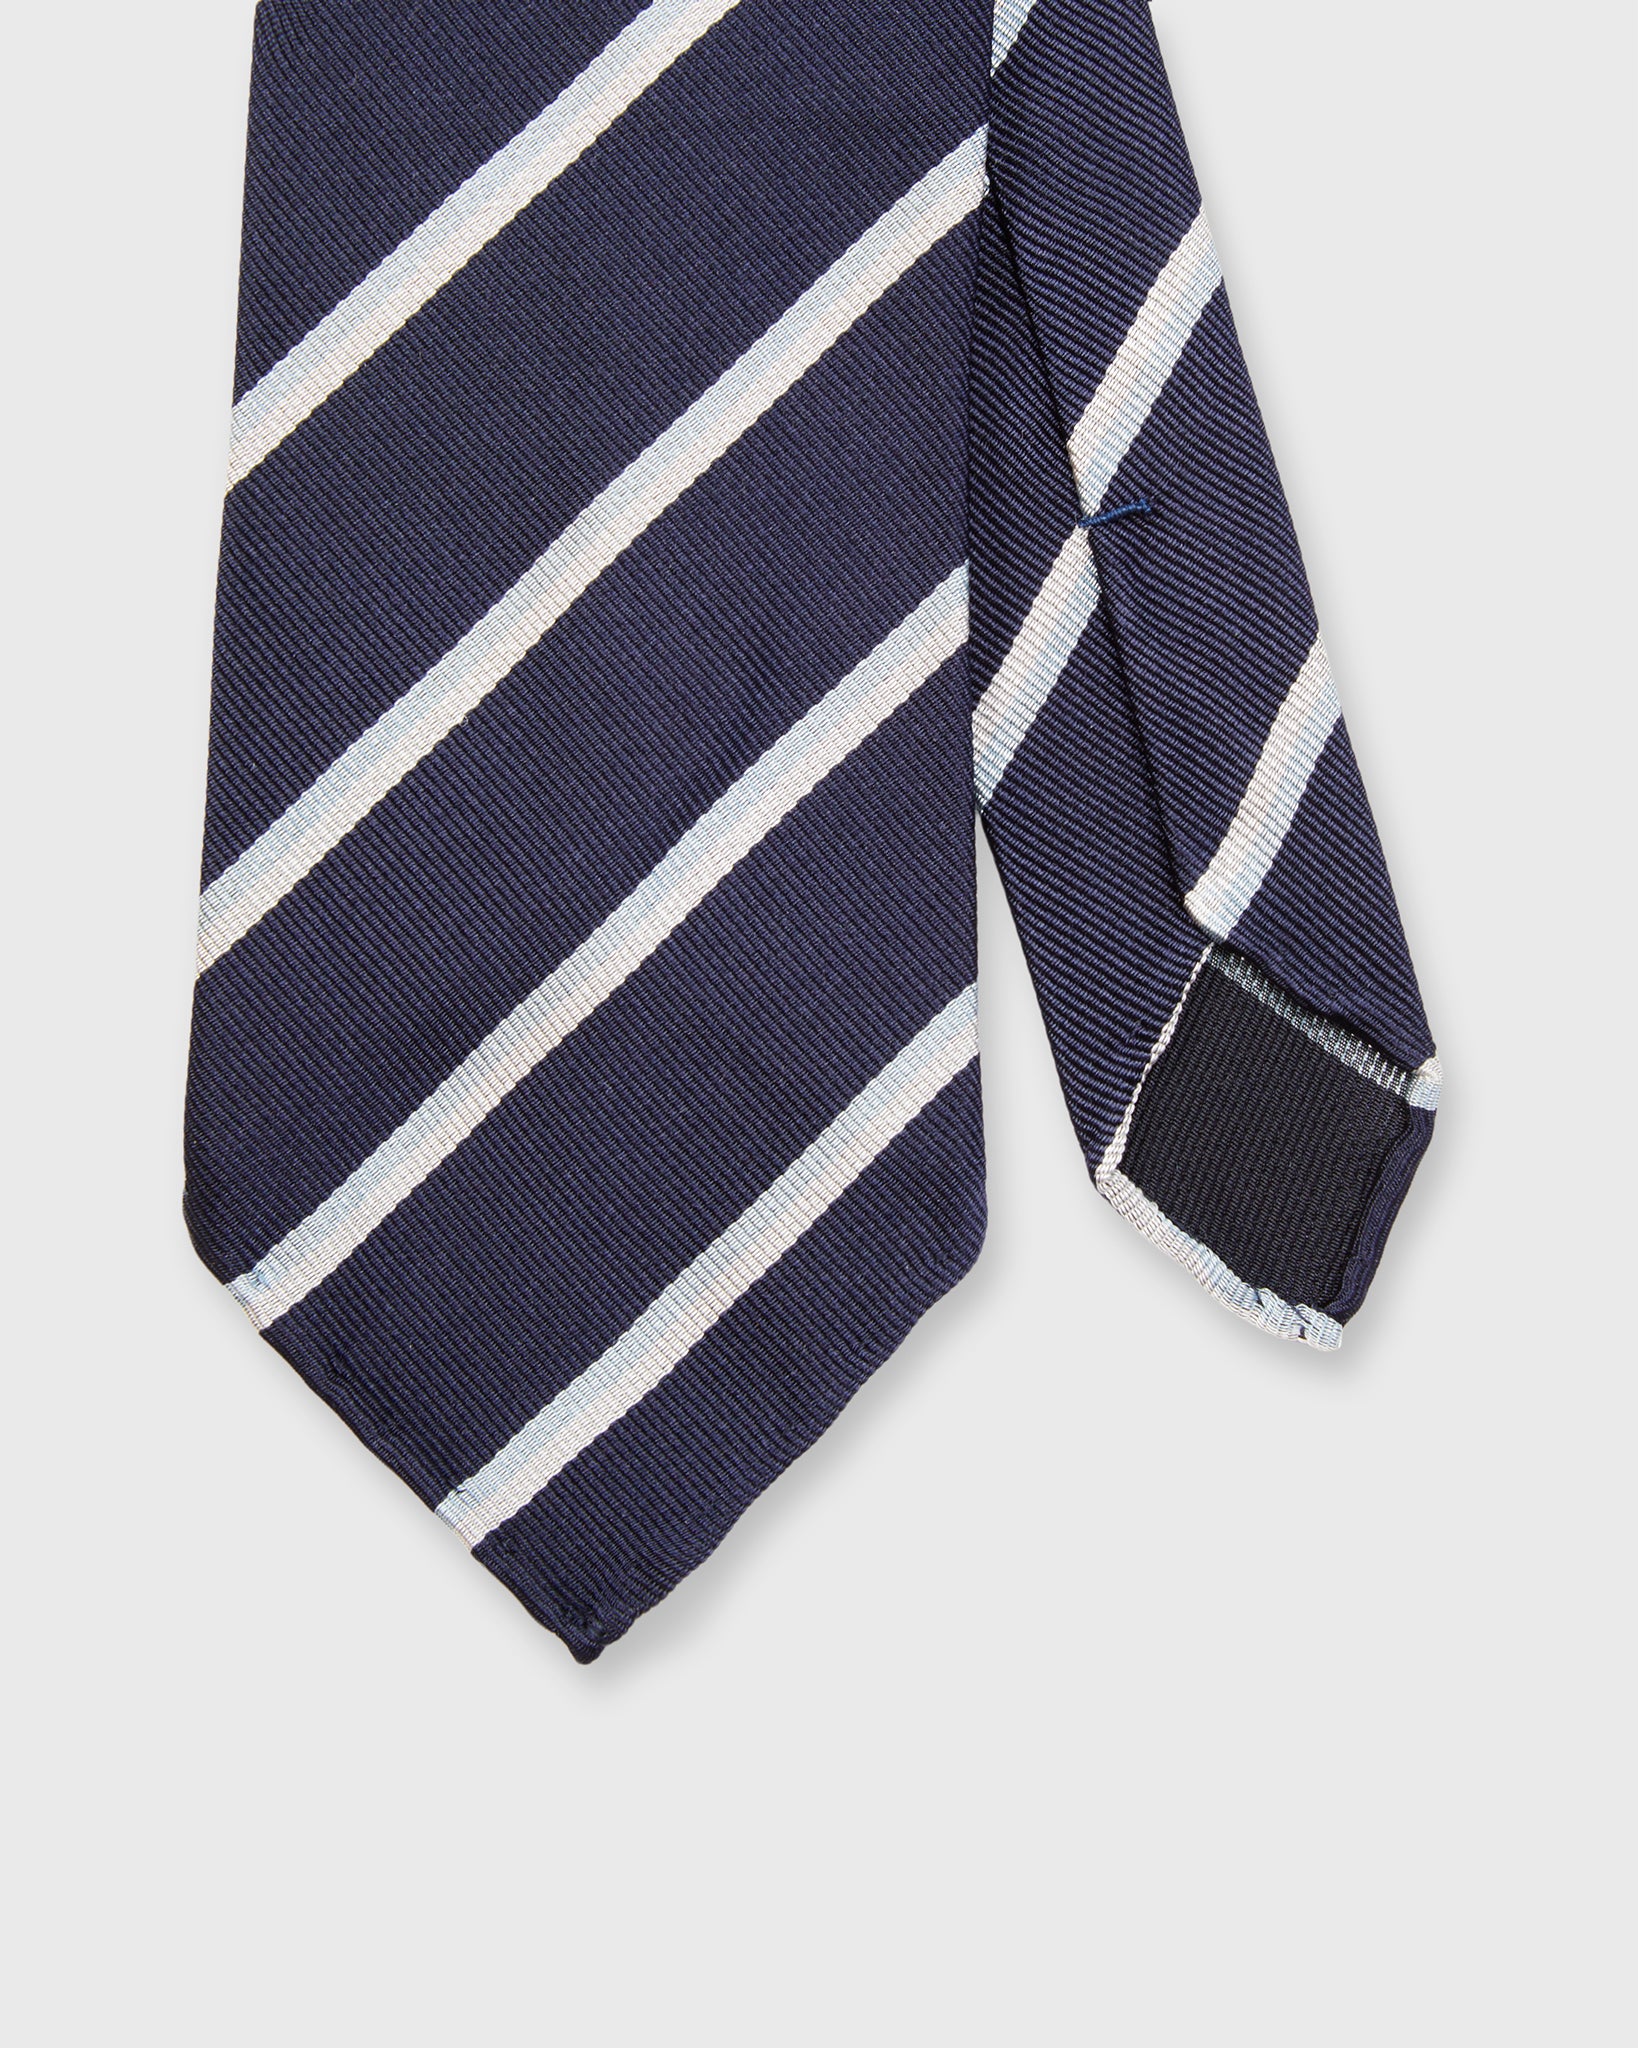 Silk Repp Tie in Navy/Sky/White Stripe